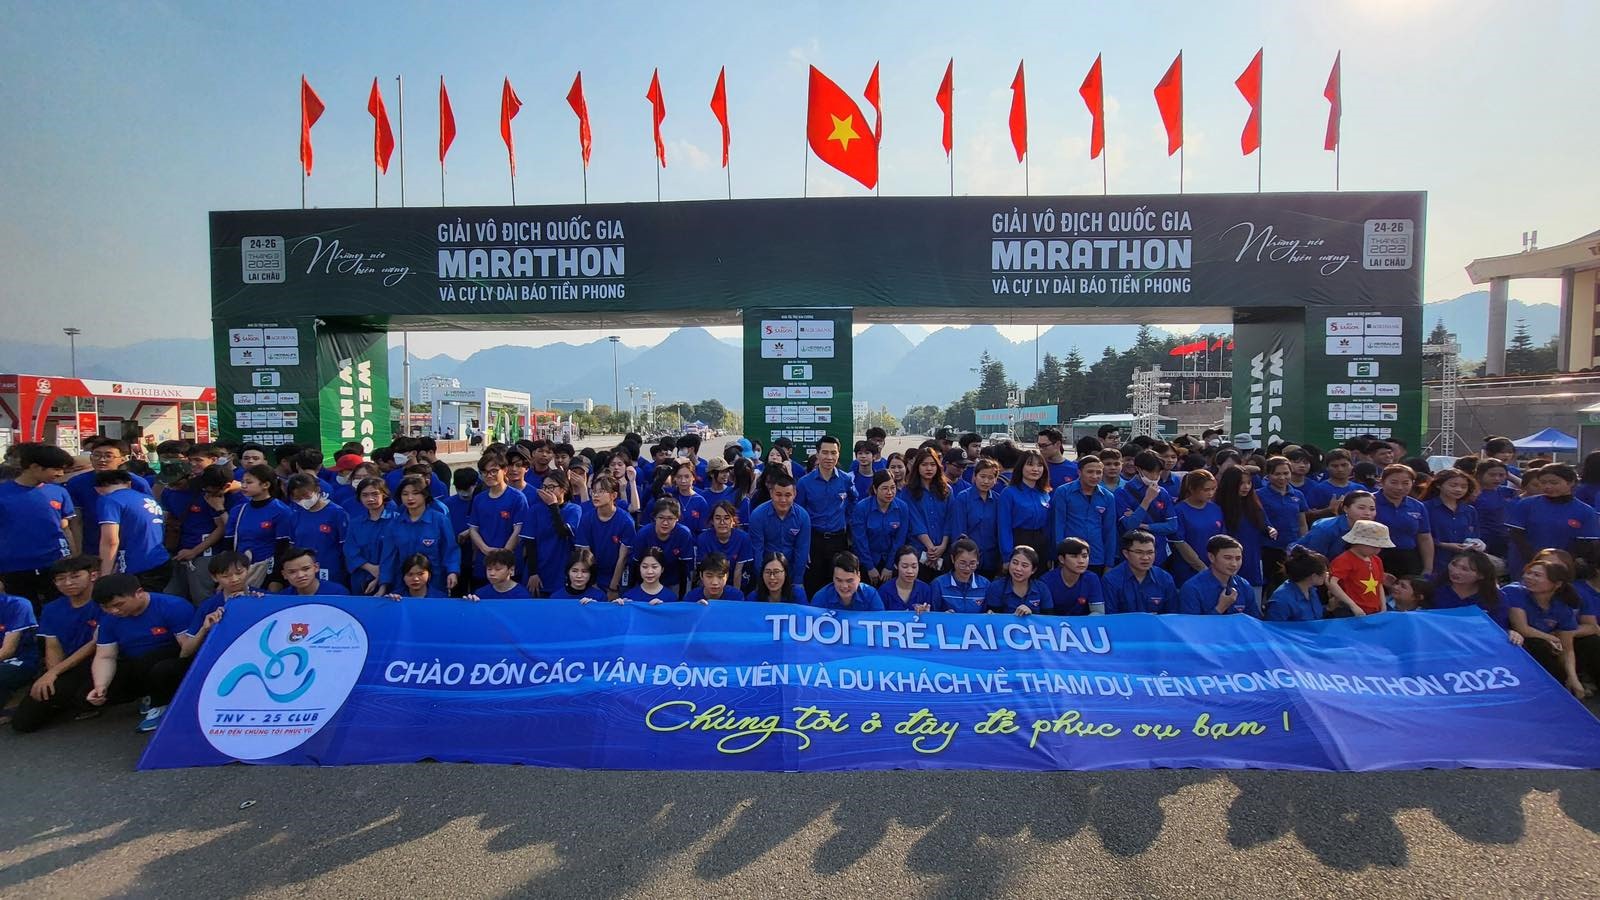 Giải vô địch quốc gia Tiền Phong Marathon lần thứ 64 diễn ra từ 25-26.3 thu hút sự quan tâm của đông đảo người yêu thể thao, khách du lịch và dân địa phương